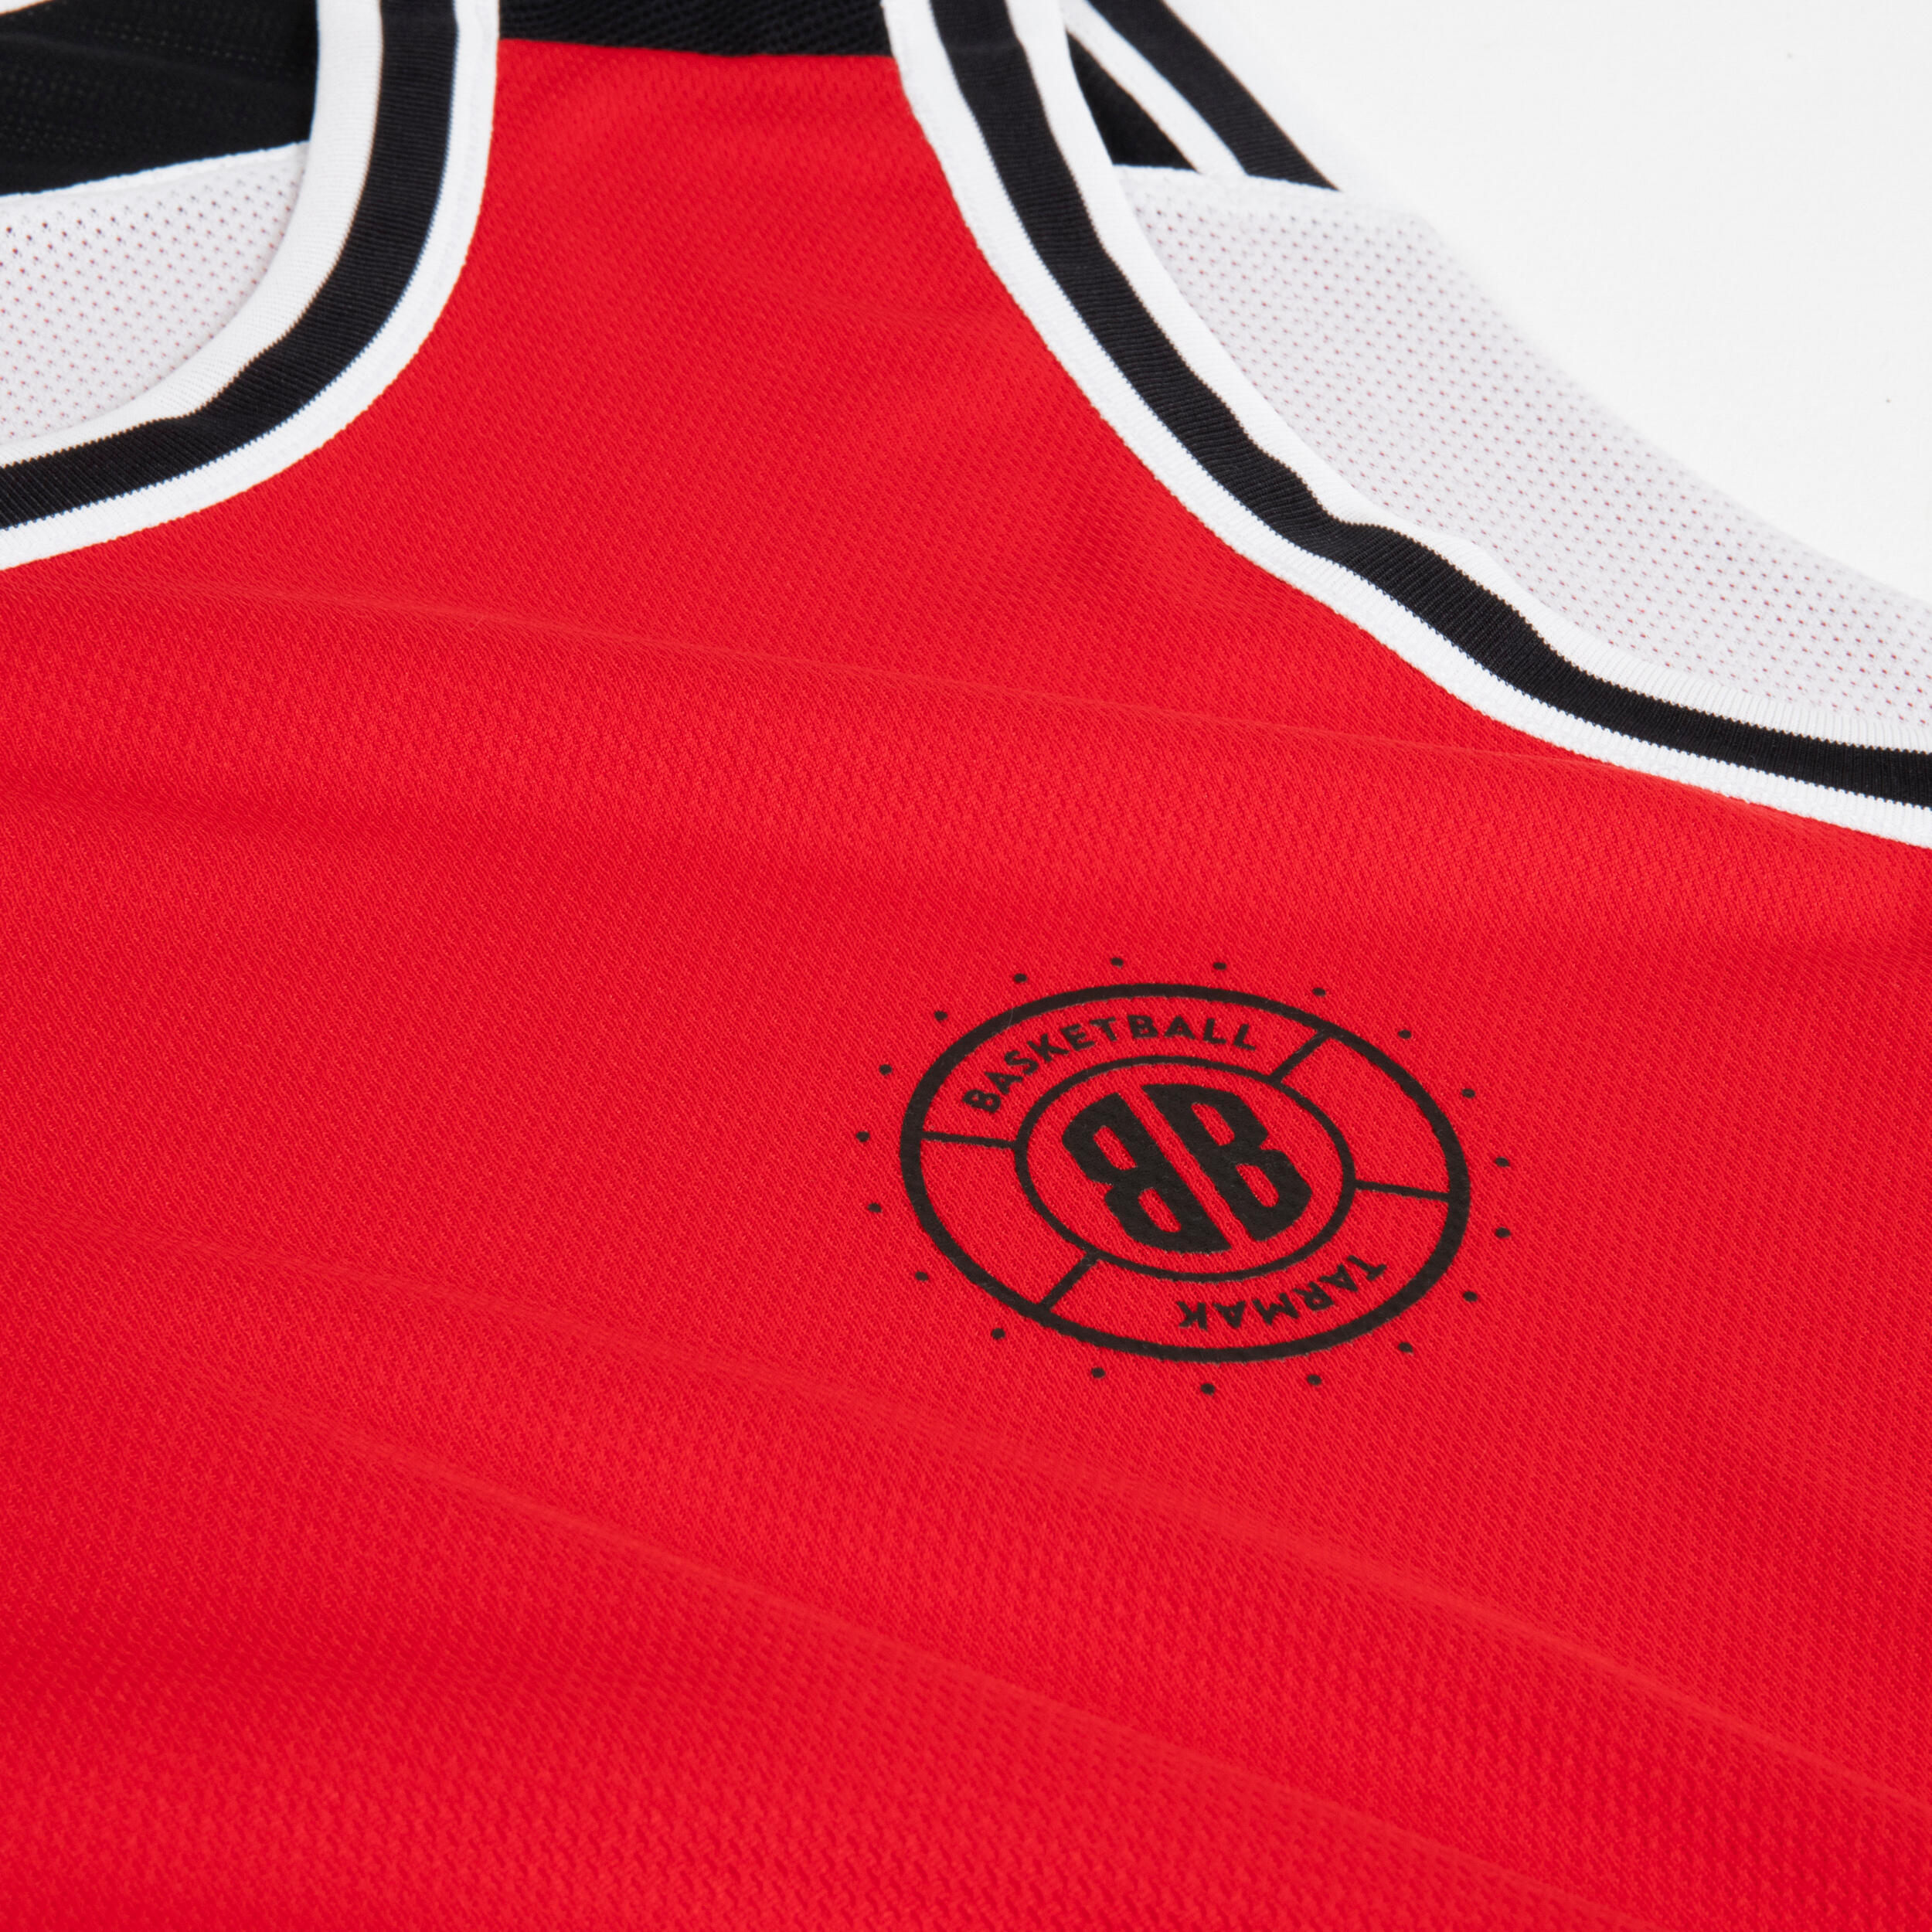 Men's/Women's Reversible Sleeveless Basketball Jersey T500 - White/Red 10/14